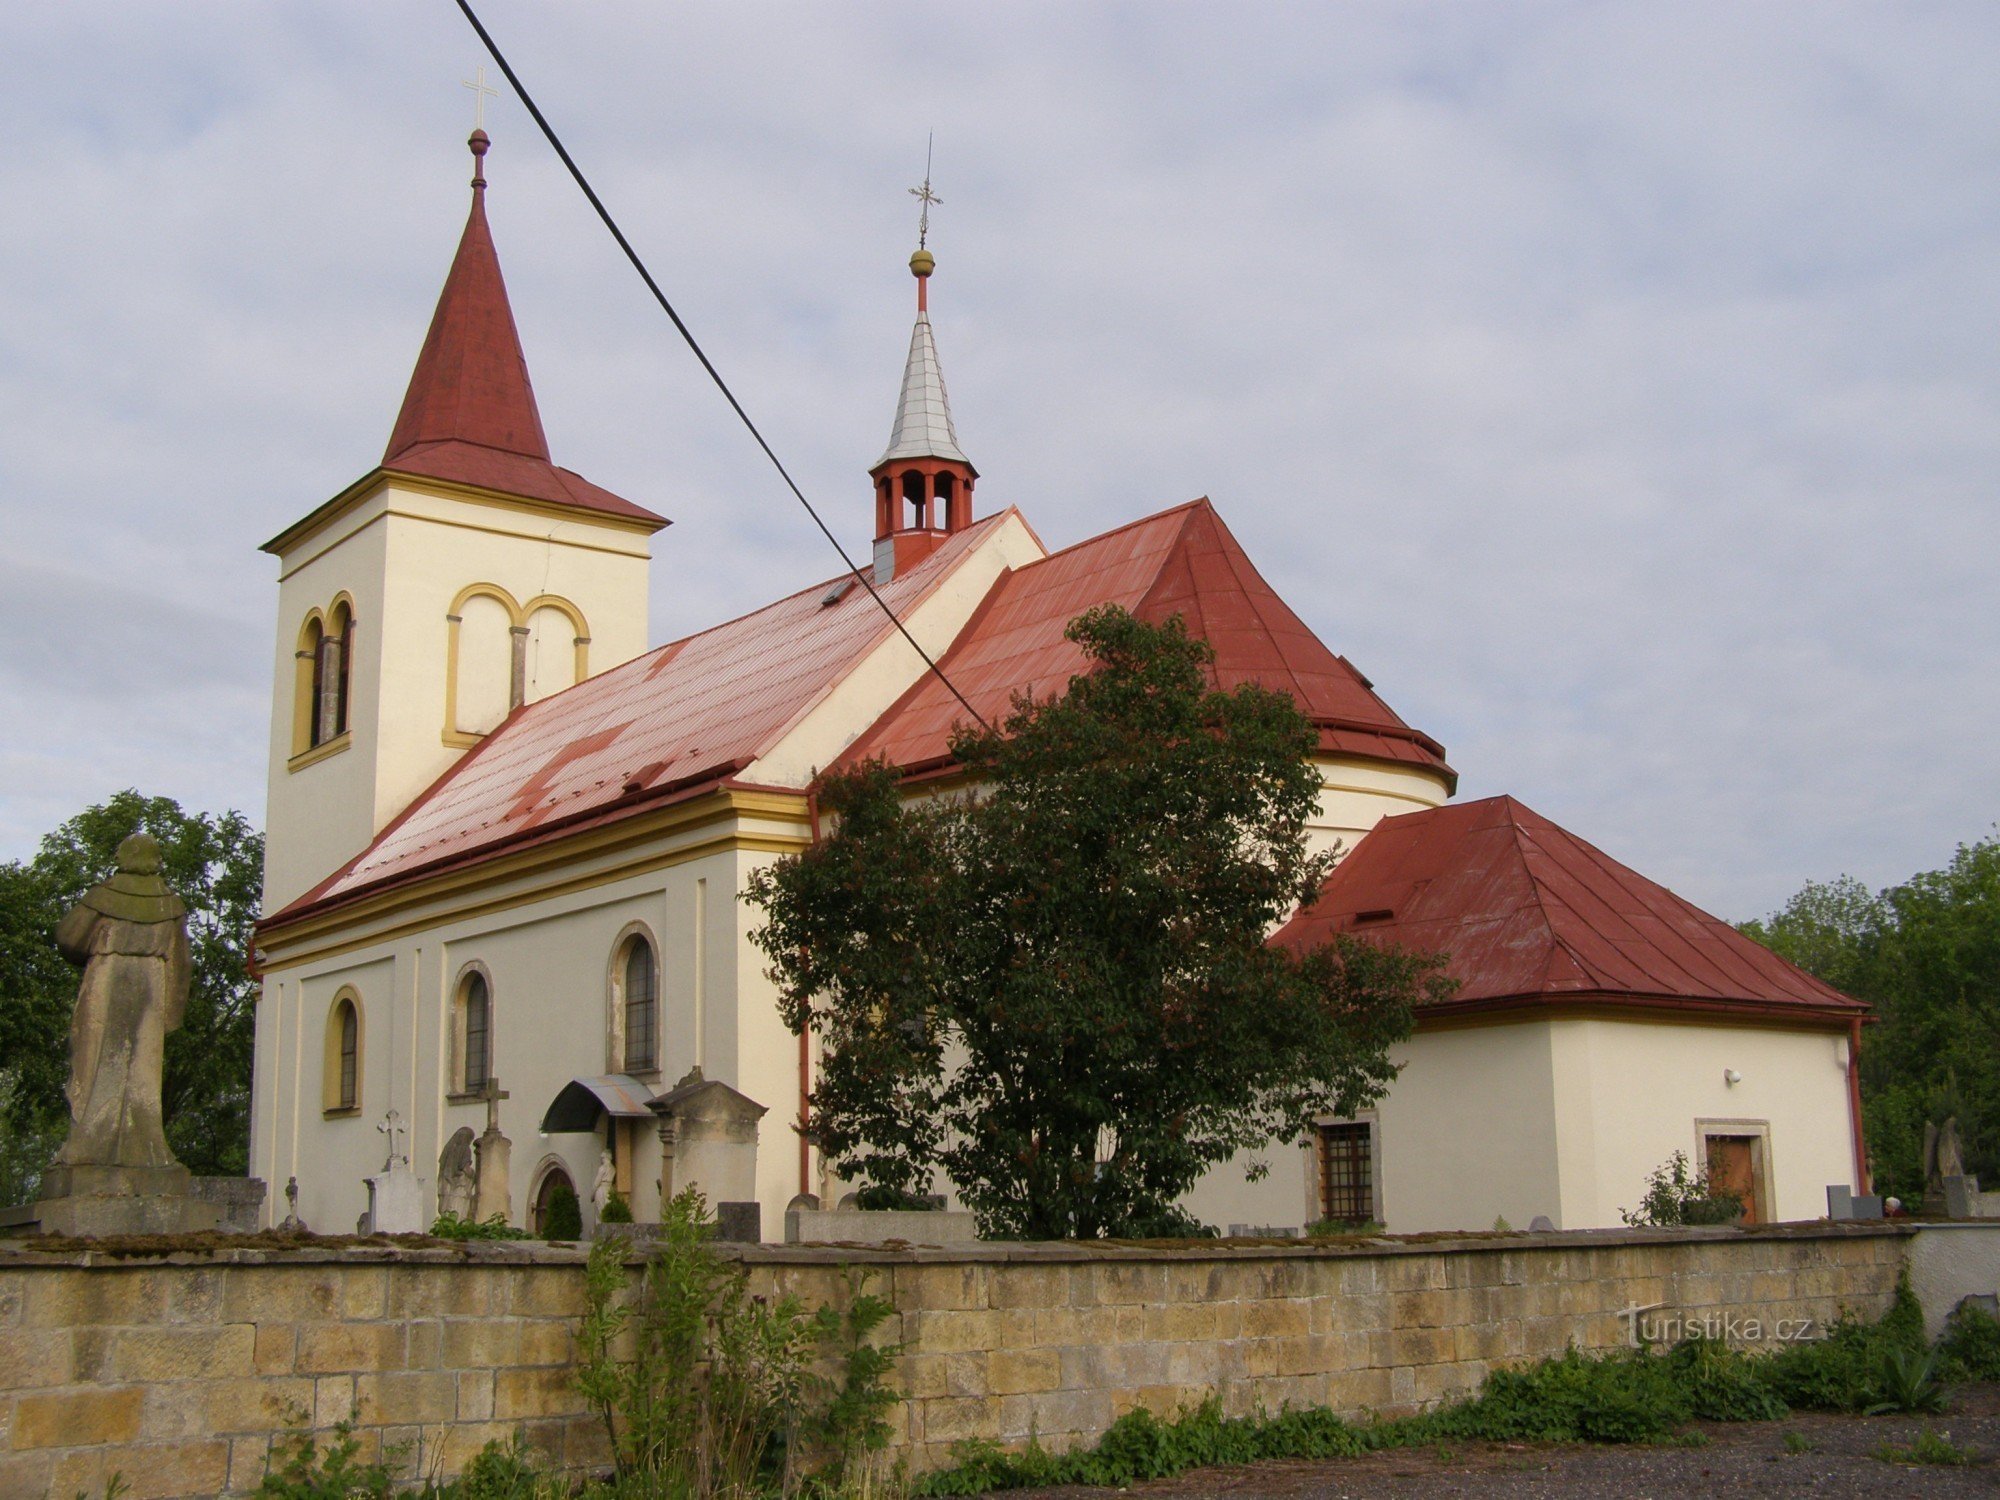 Robousy - Église de la Découverte de St. Crise